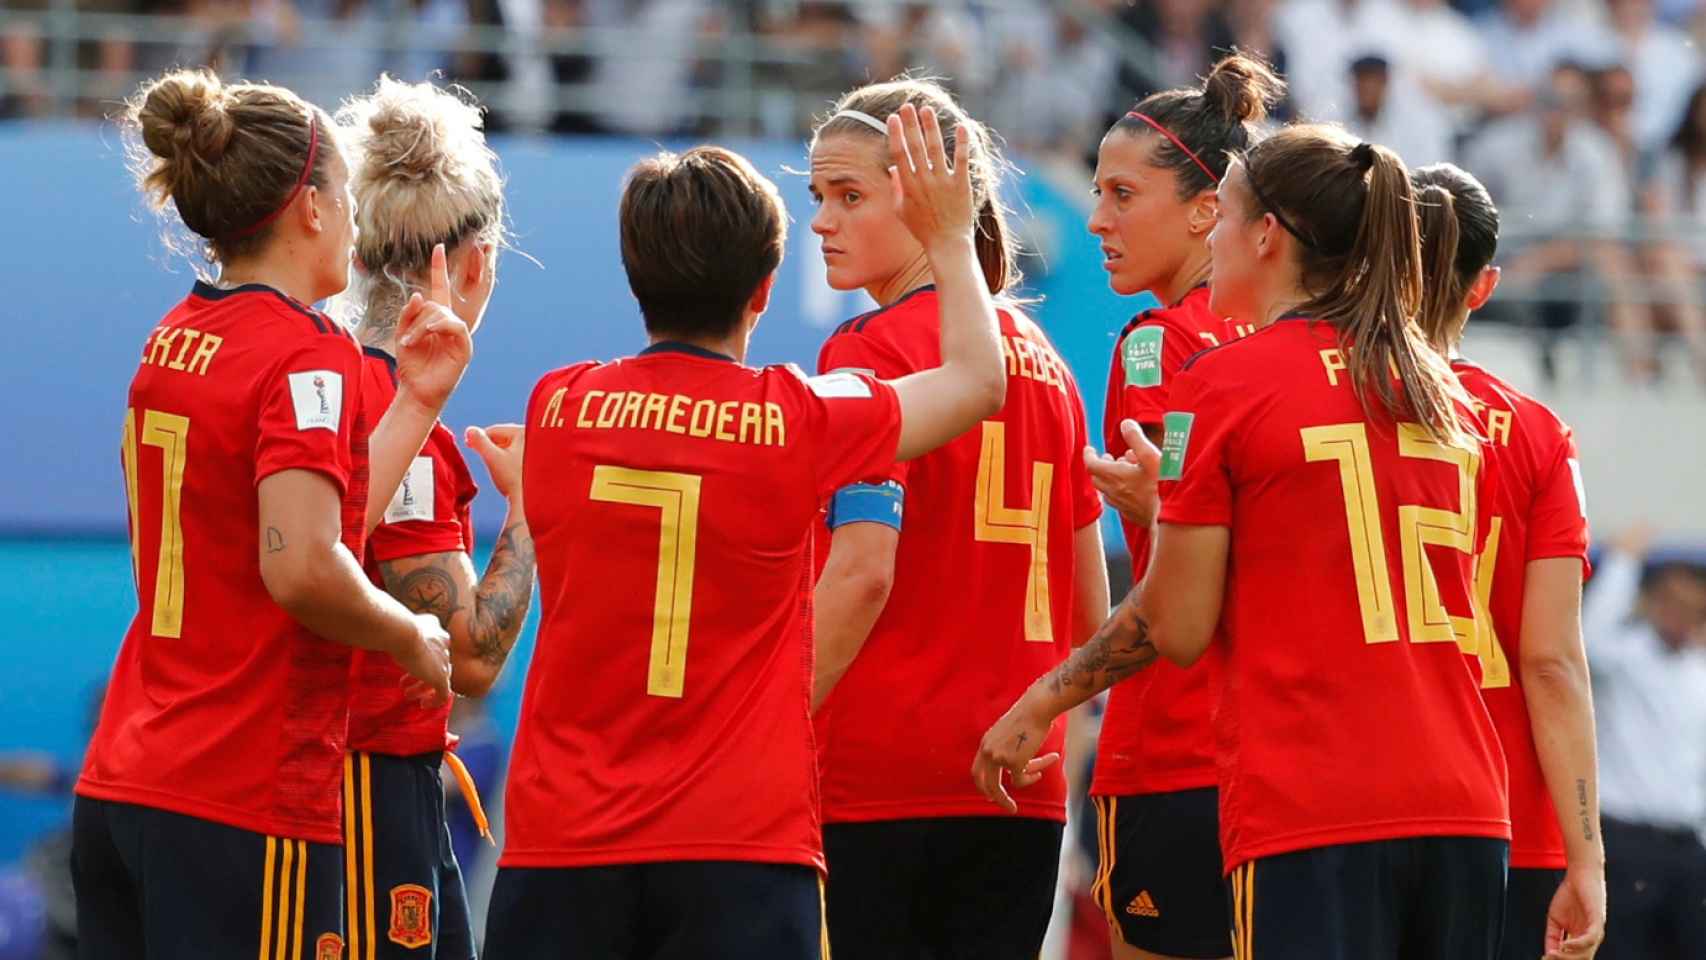 Las jugadoras españolas hablan tras el gol de Estados Unidos